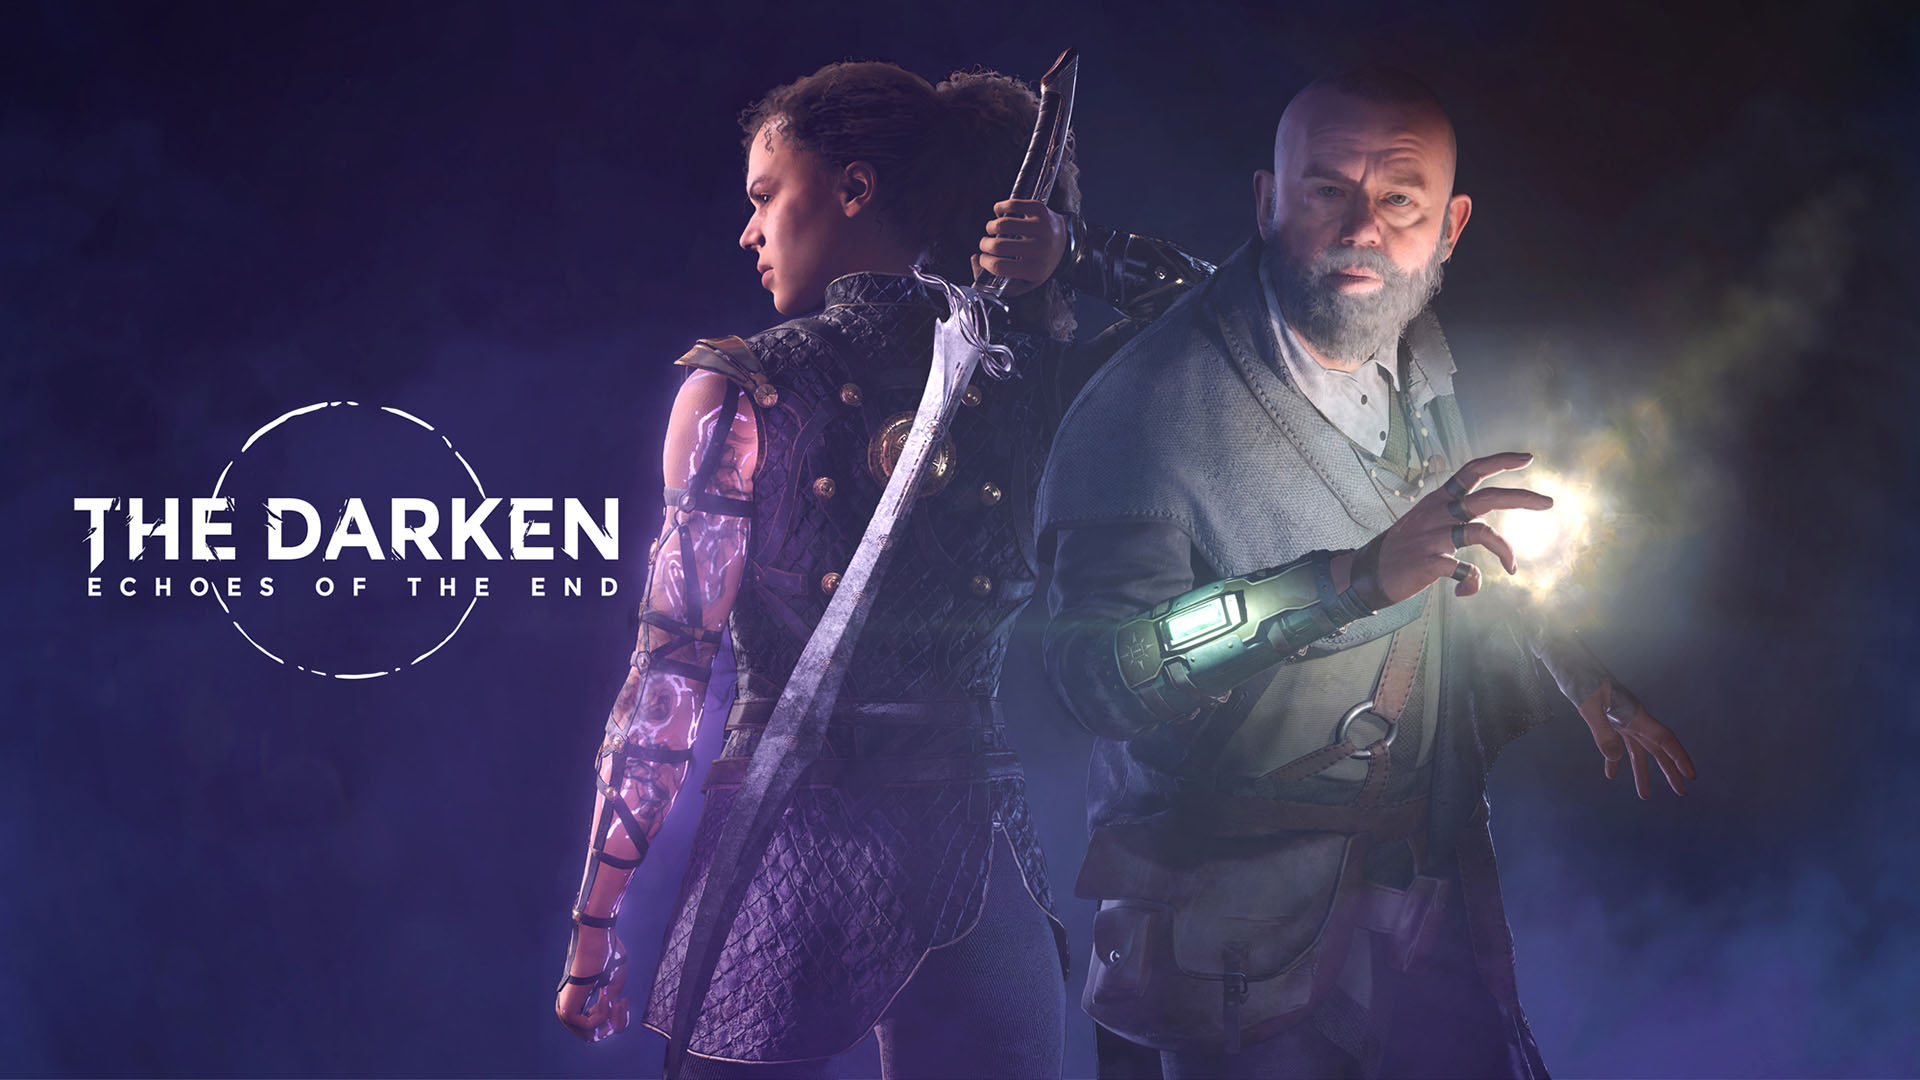 The Darken is Myrkur Games first title